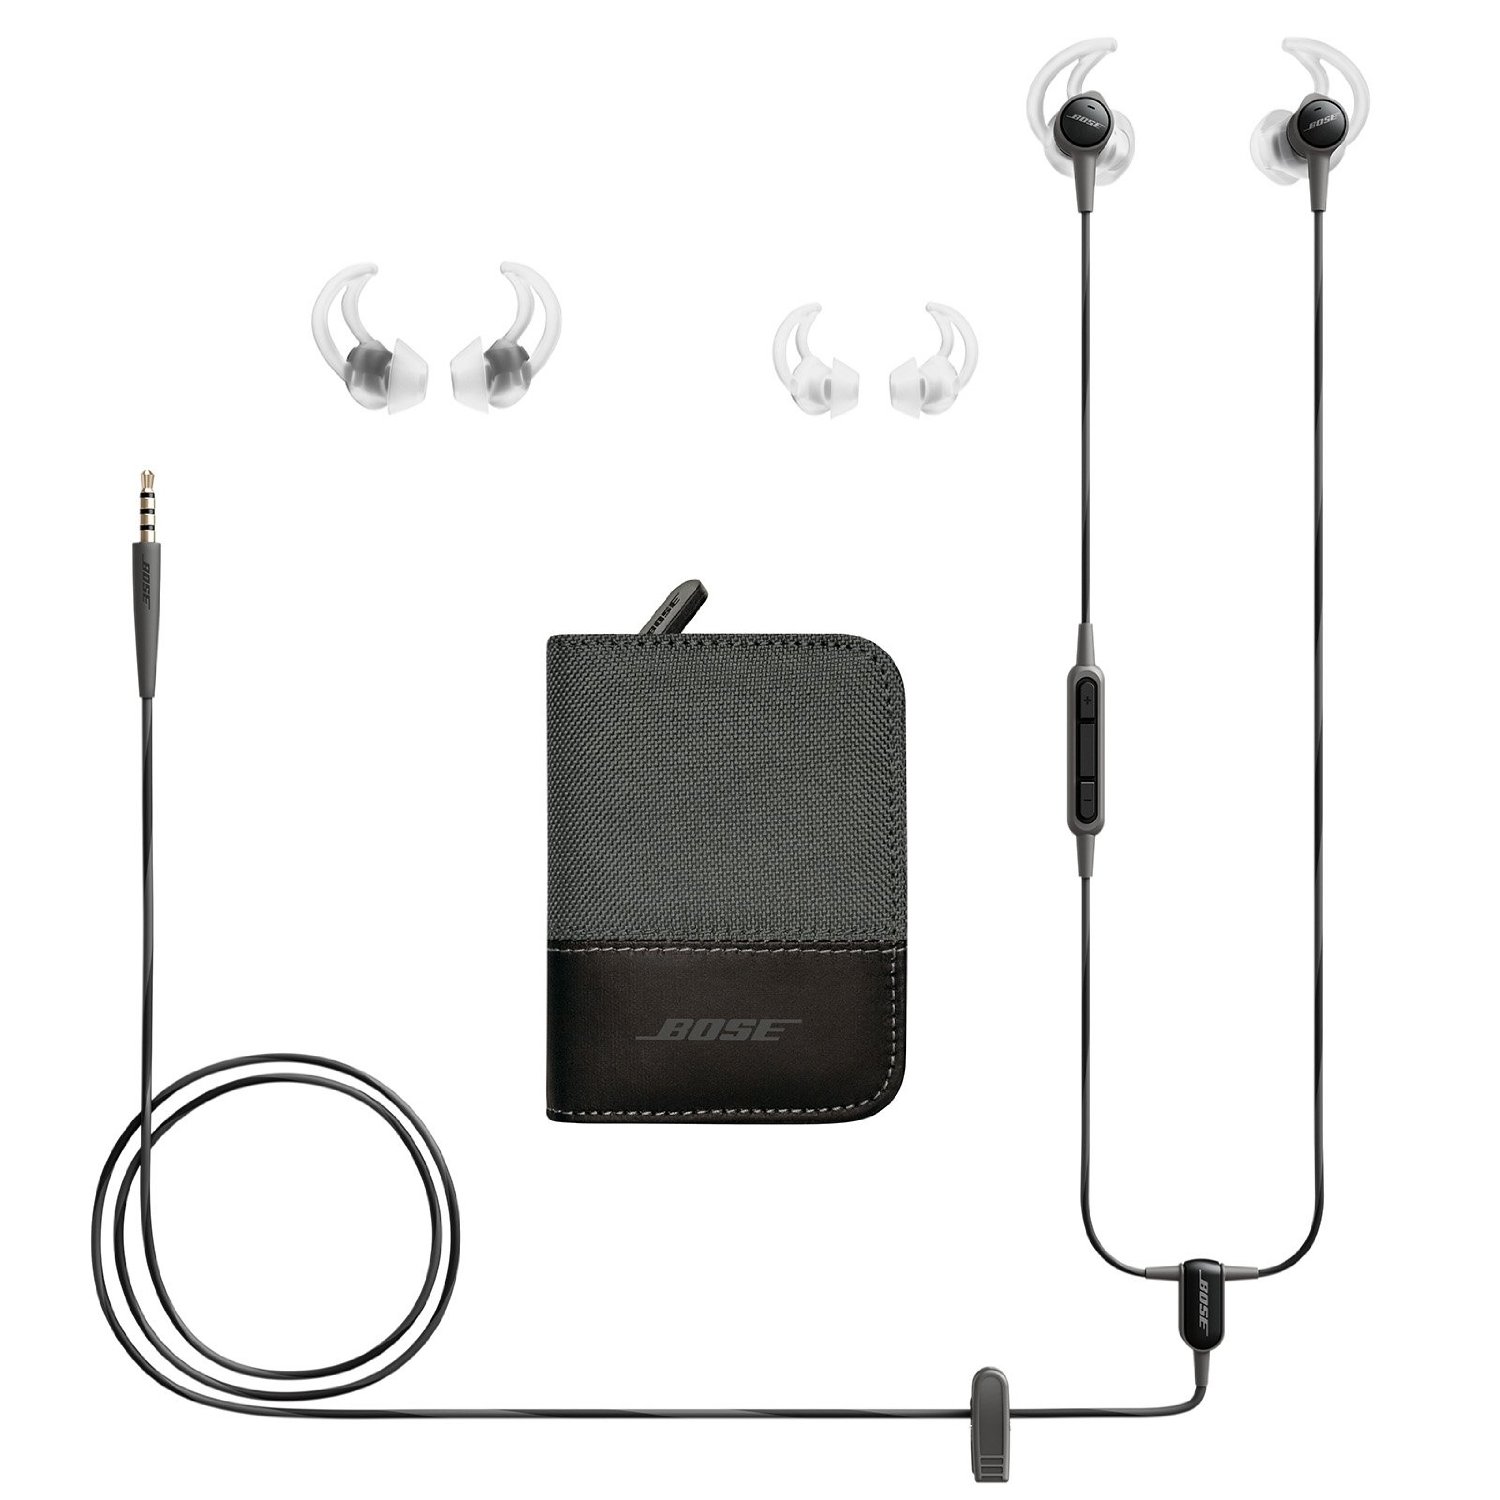 Les écouteurs Bose SoundTrue et leurs accessoires.